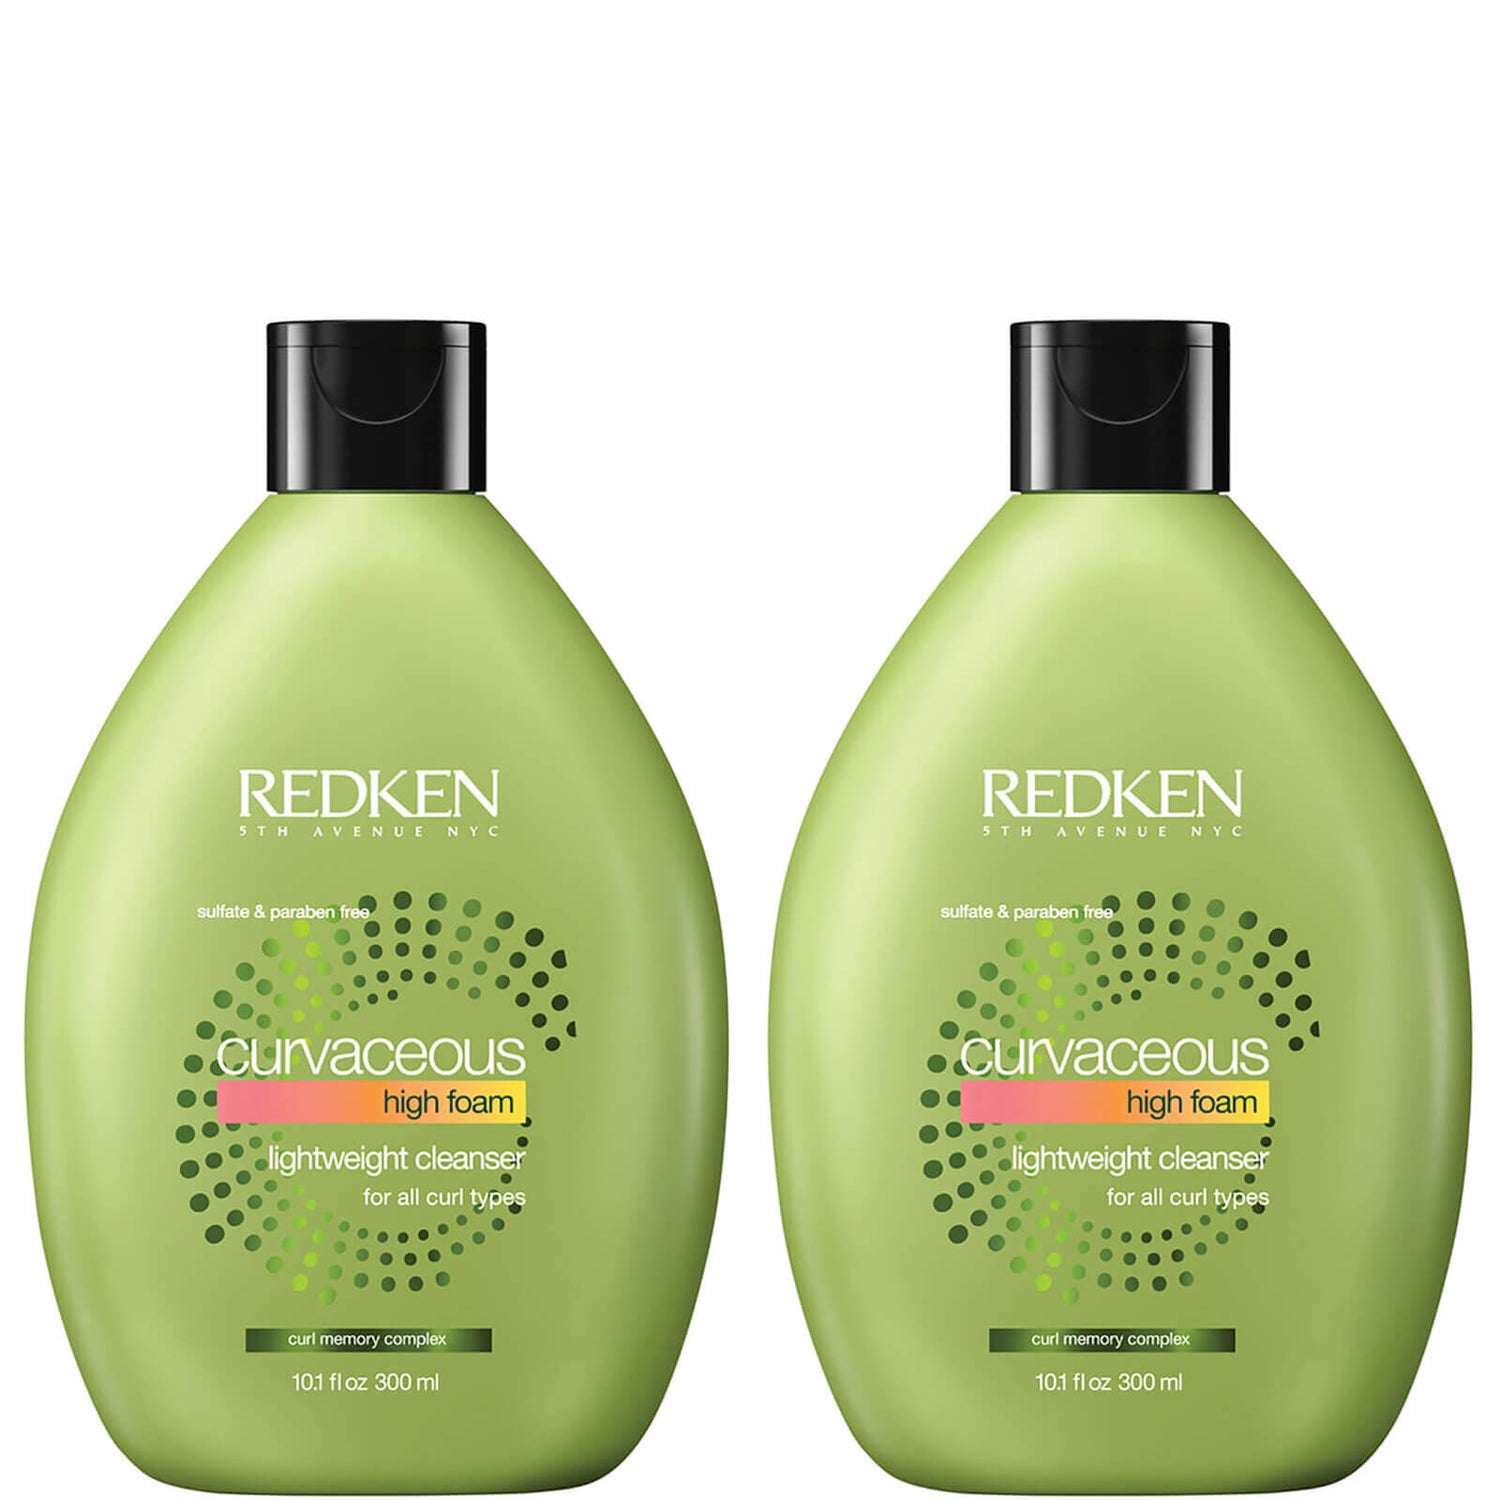 Redken Curvaceous High Foam Shampoo Duo (2 x 300 ml)